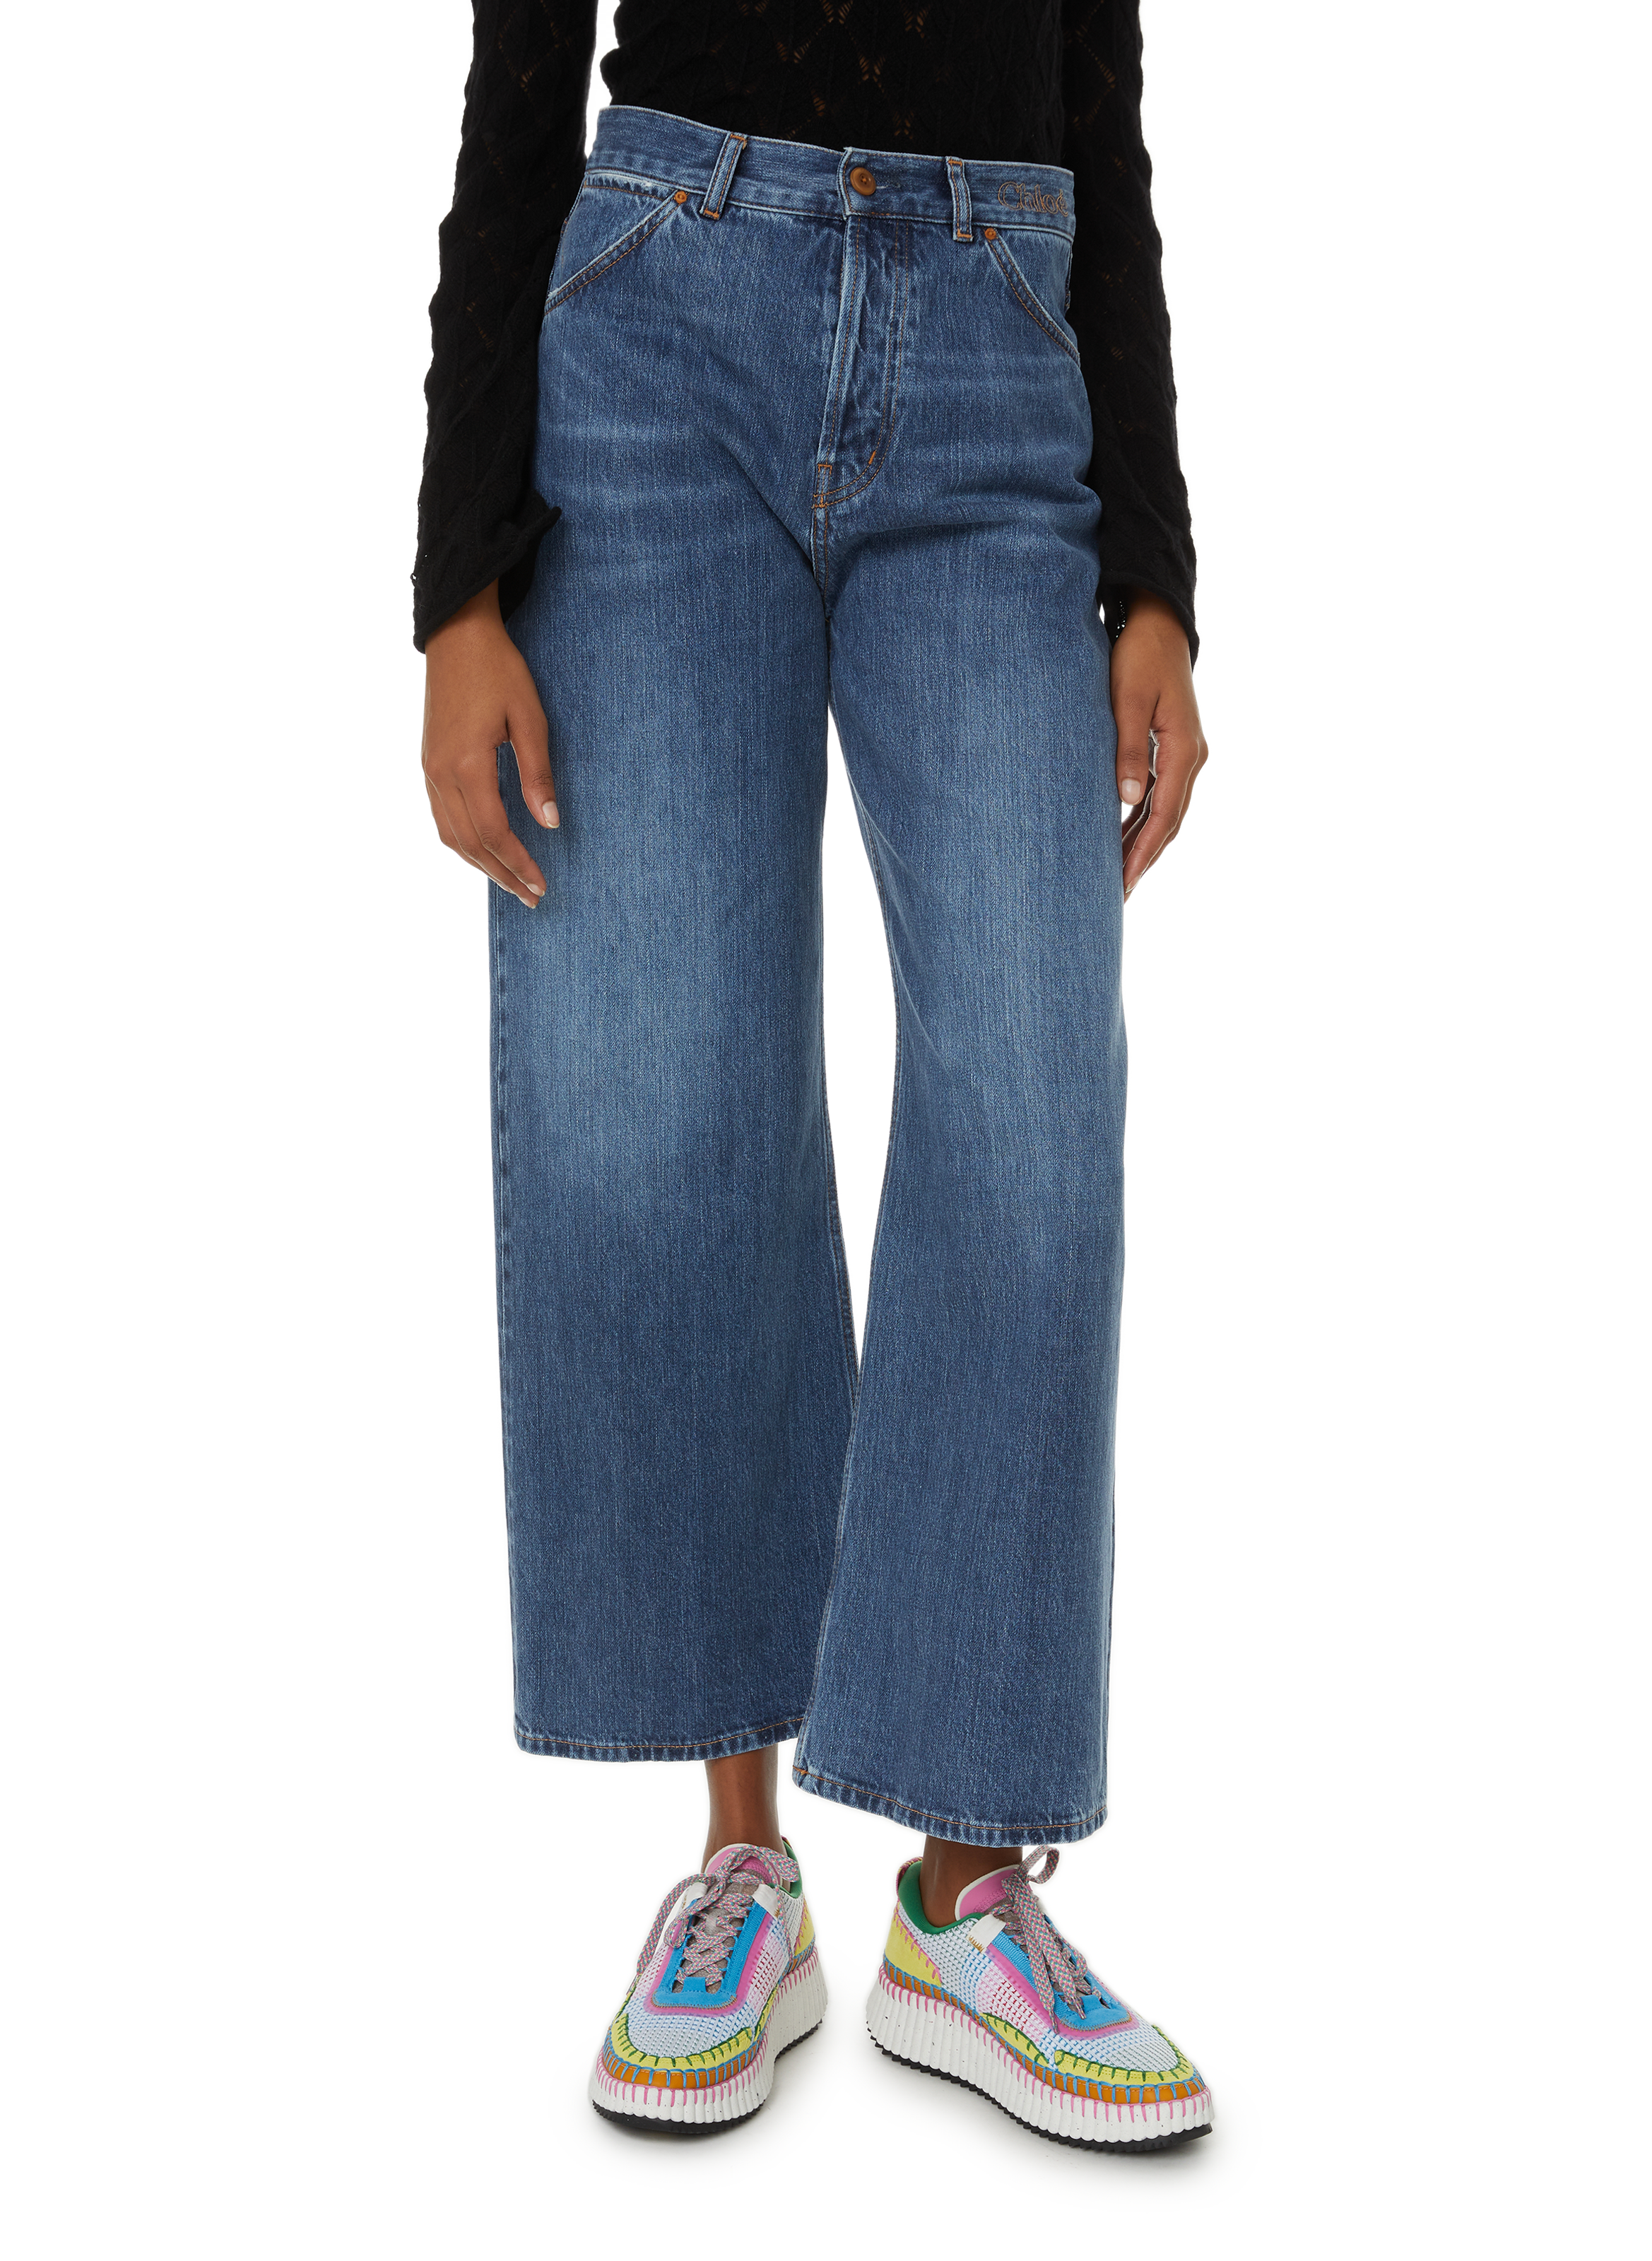 Pantalon court large Stromboli » Femme Taille 25 100% coton Chloé Femme Vêtements Pantalons & Jeans Pantalons Pantalons larges 